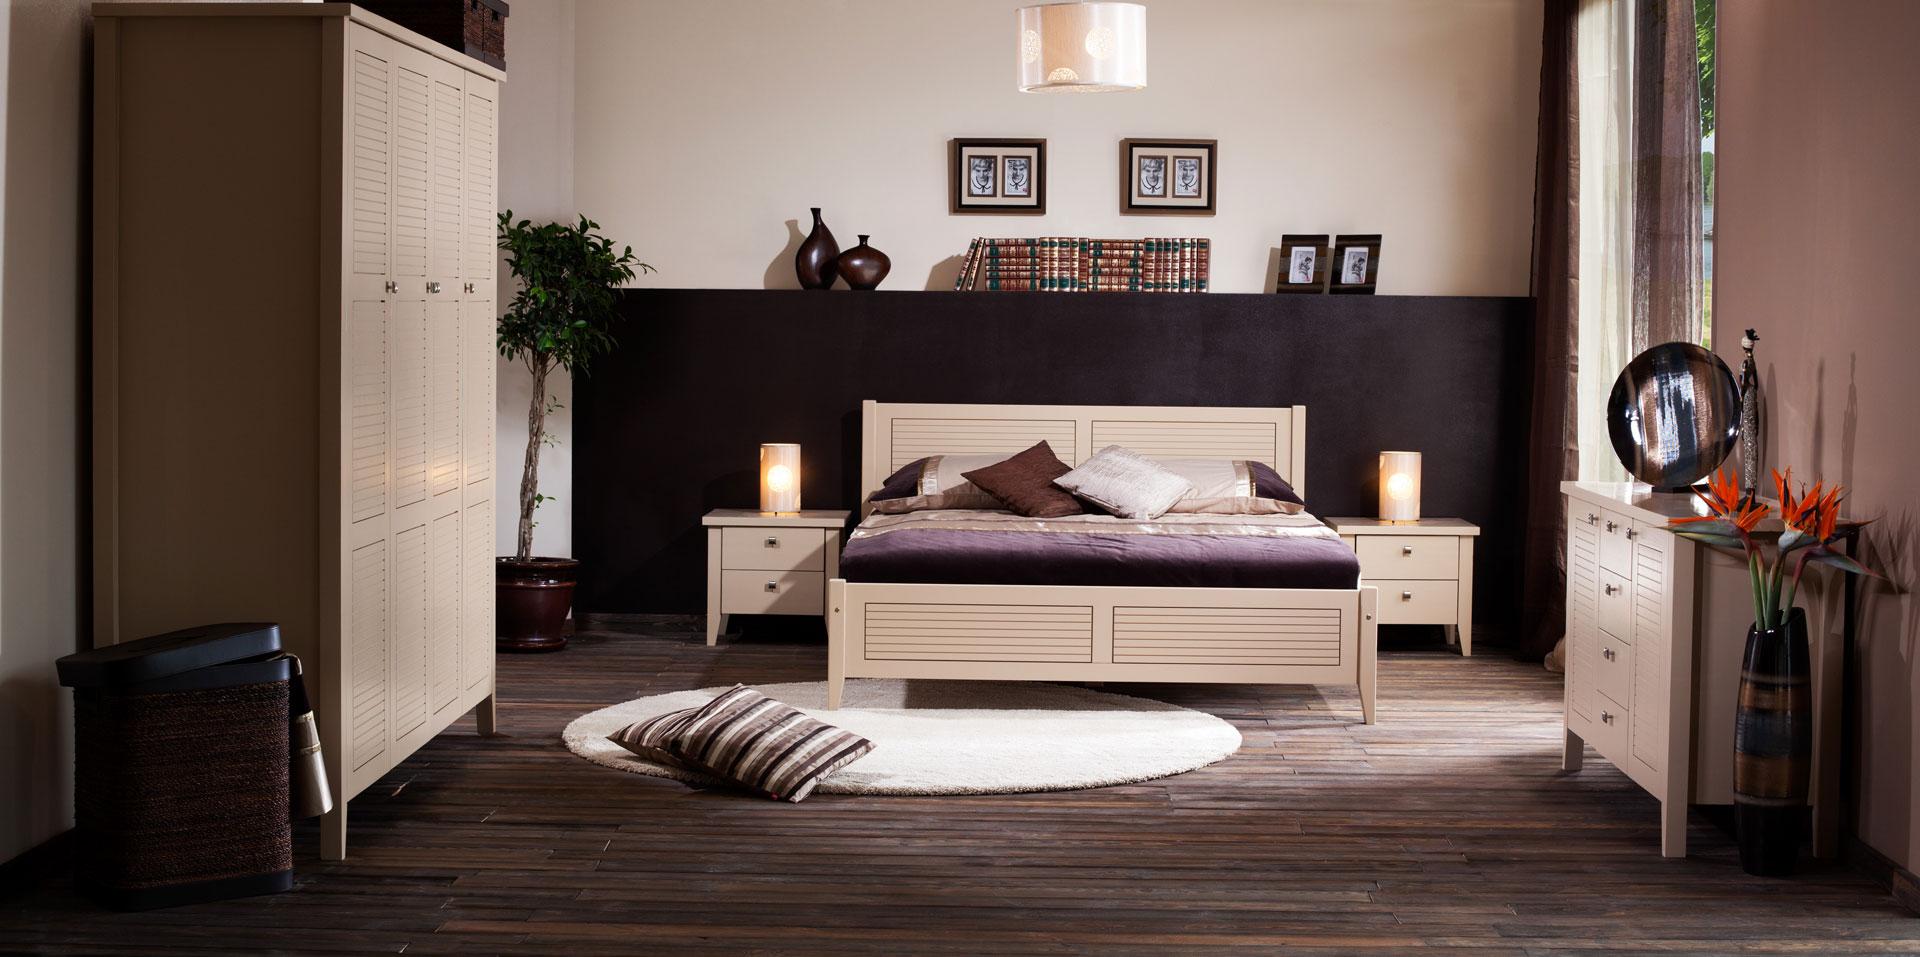 Meble drewniane w stylu włoskim do sypialni Torino